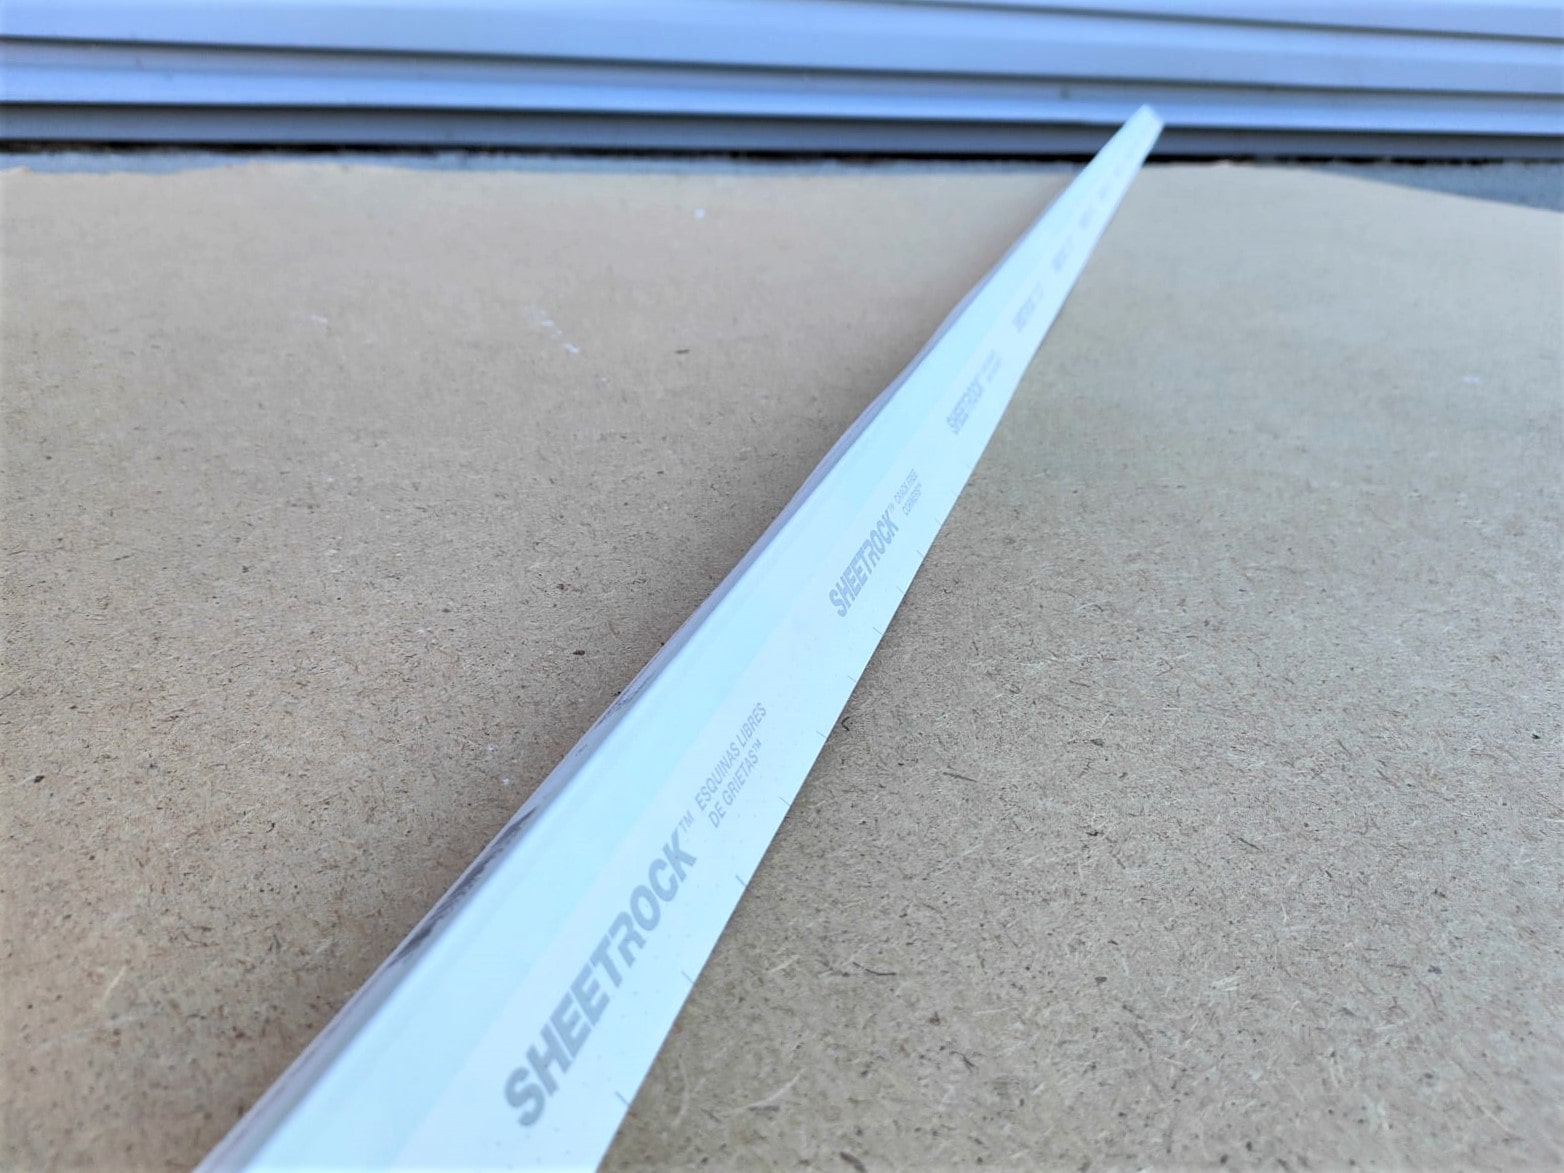 Металлизированный уголок sheetrock (Шитрок) на бумажной основе для внешних углов 3,05 м